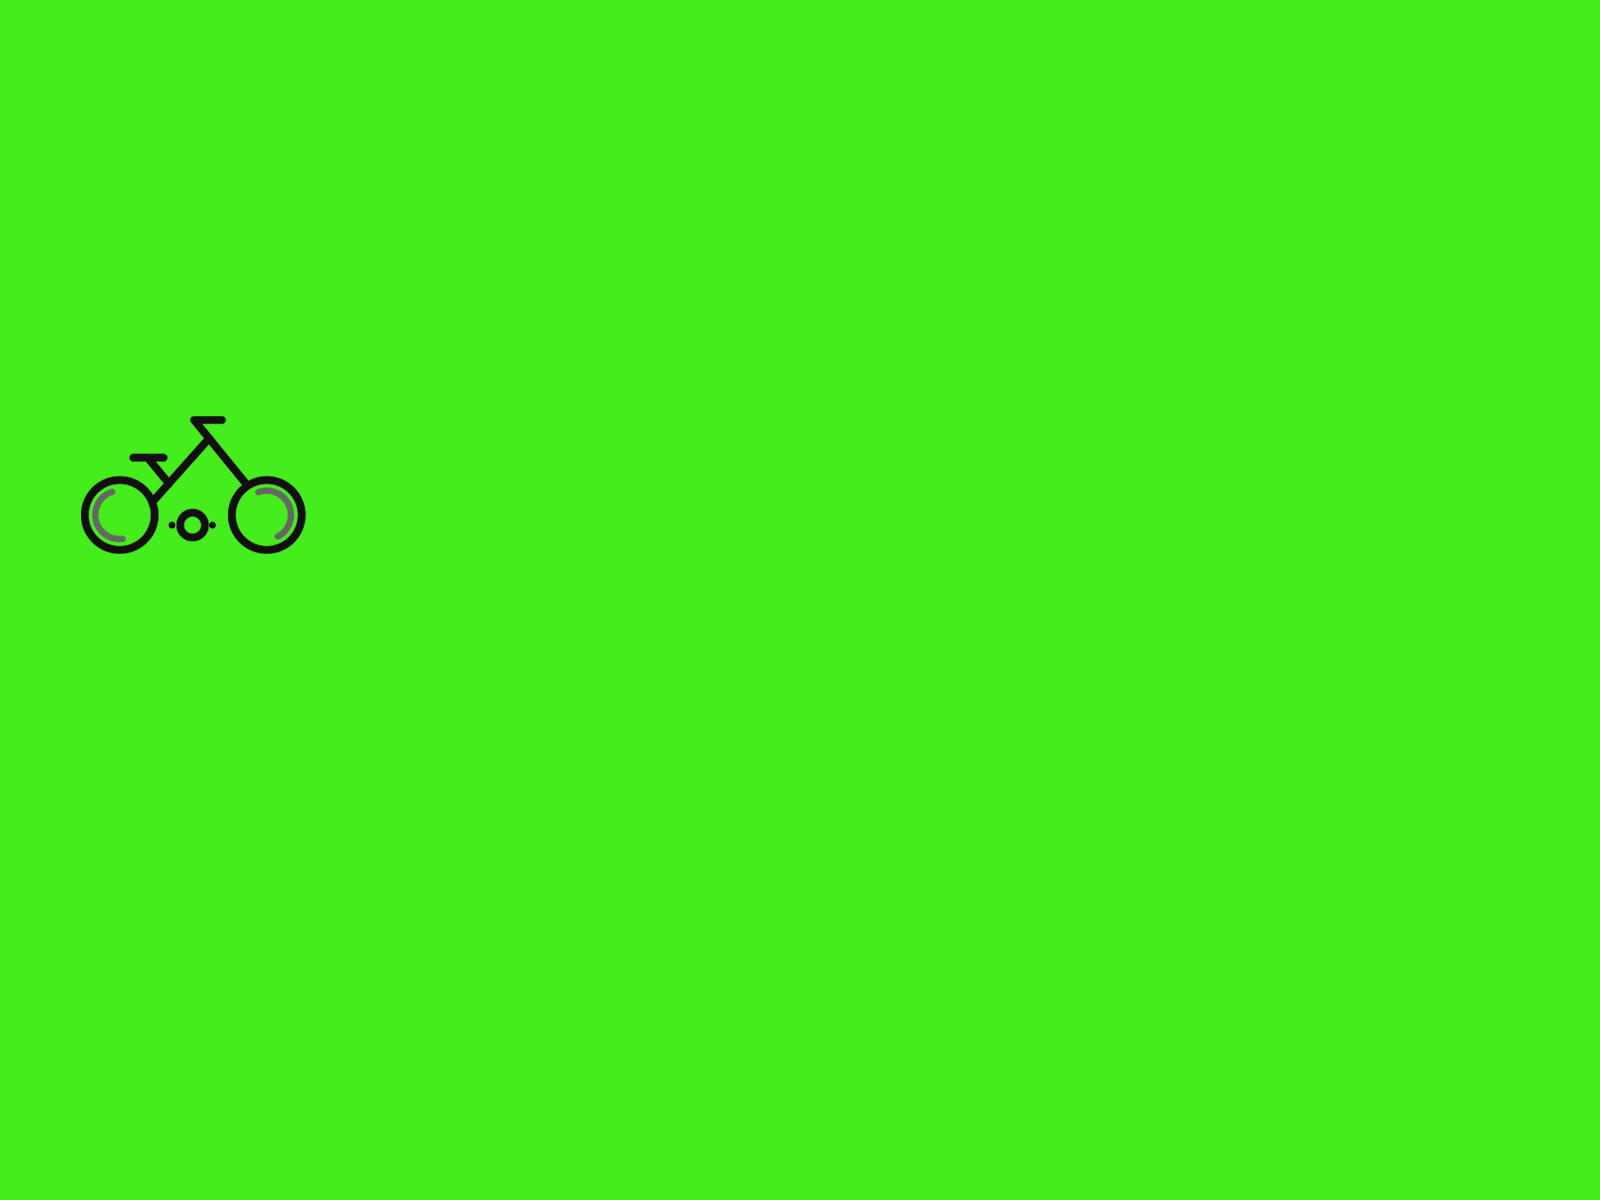 Cycle moving logo animation